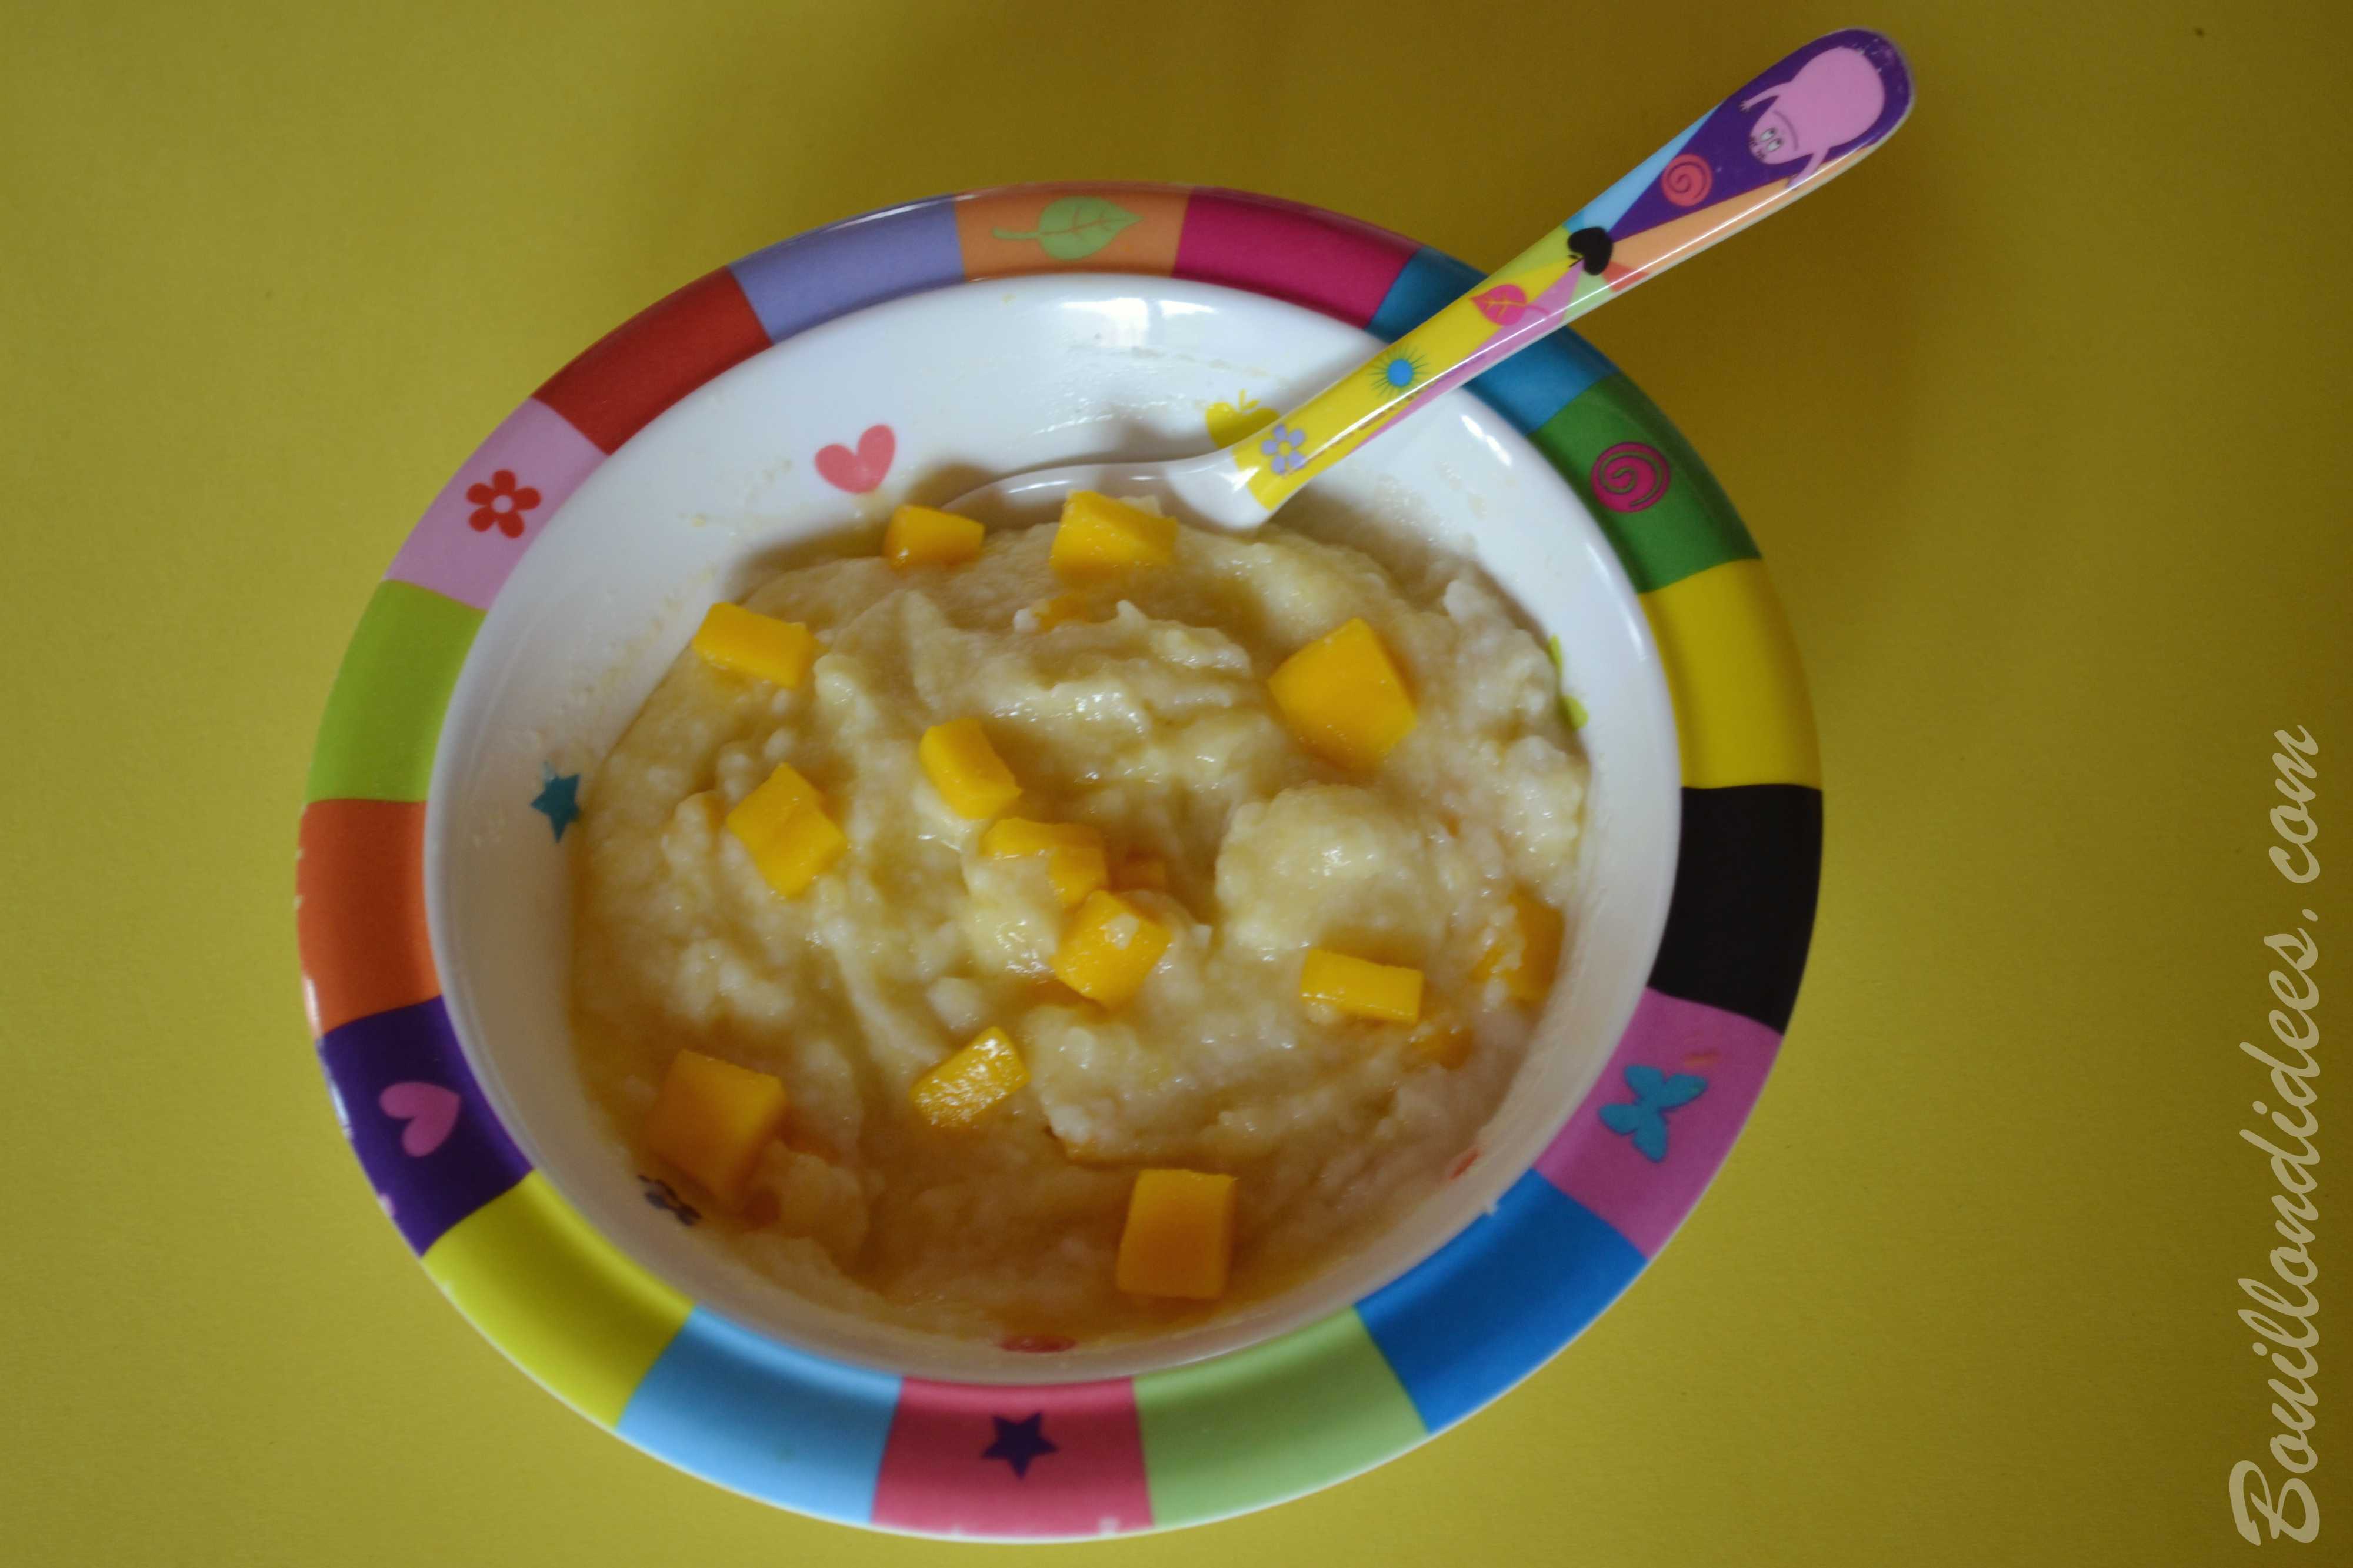 Premier Porridge Pour Bebe A La Mangue Sans Plv Sans Gluten